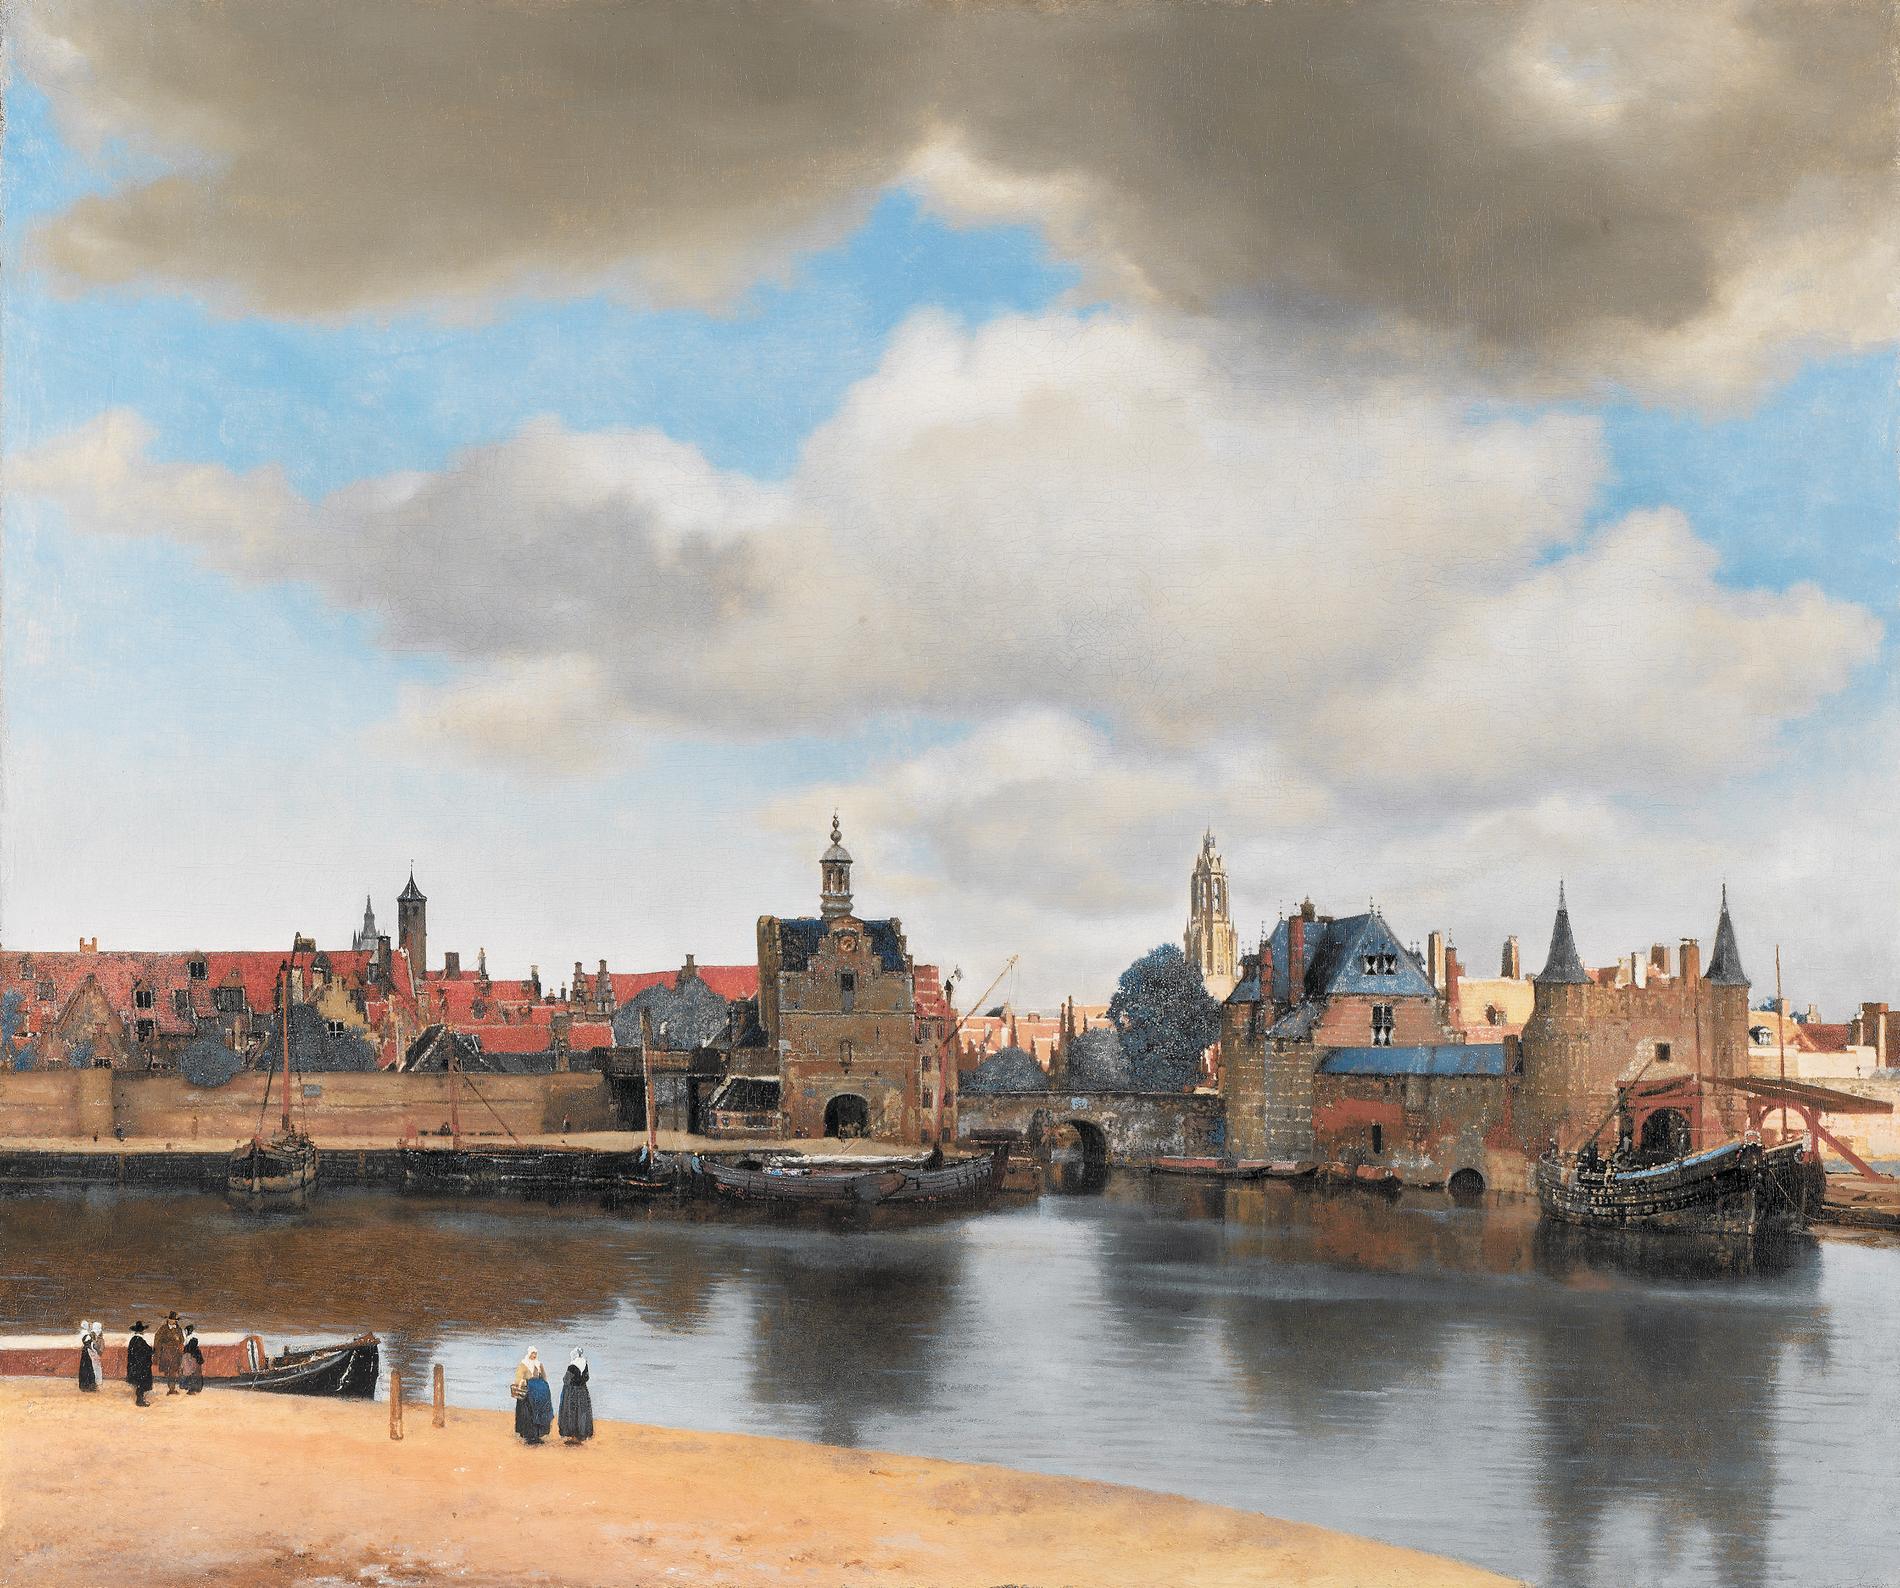 När målade Vermeer sin "Vy över Delft"? Svaret kan finnas i skyn.